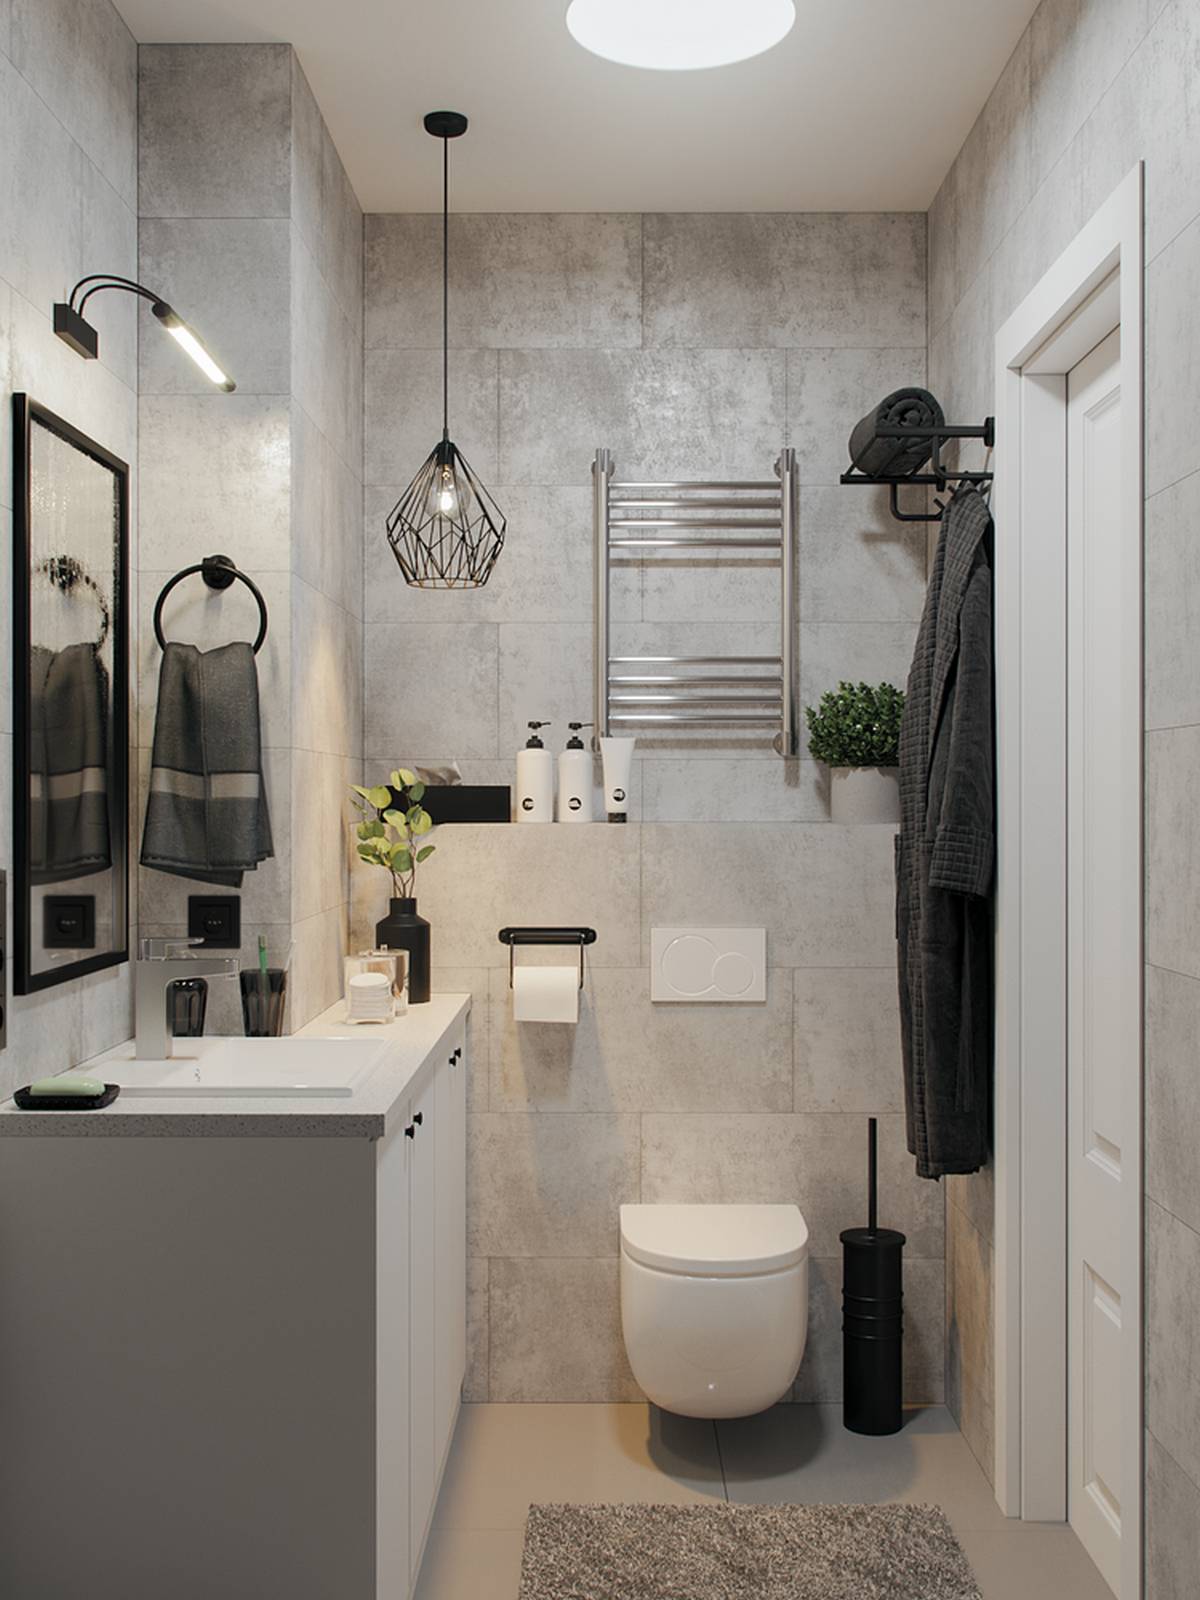 Phòng tắm tuy nhỏ nhưng vẫn rất tiện nghi nhờ nội thất gắn tường giúp giải phóng diện tích mặt sàn cùng đèn ốp trần cho không gian thoáng sáng.